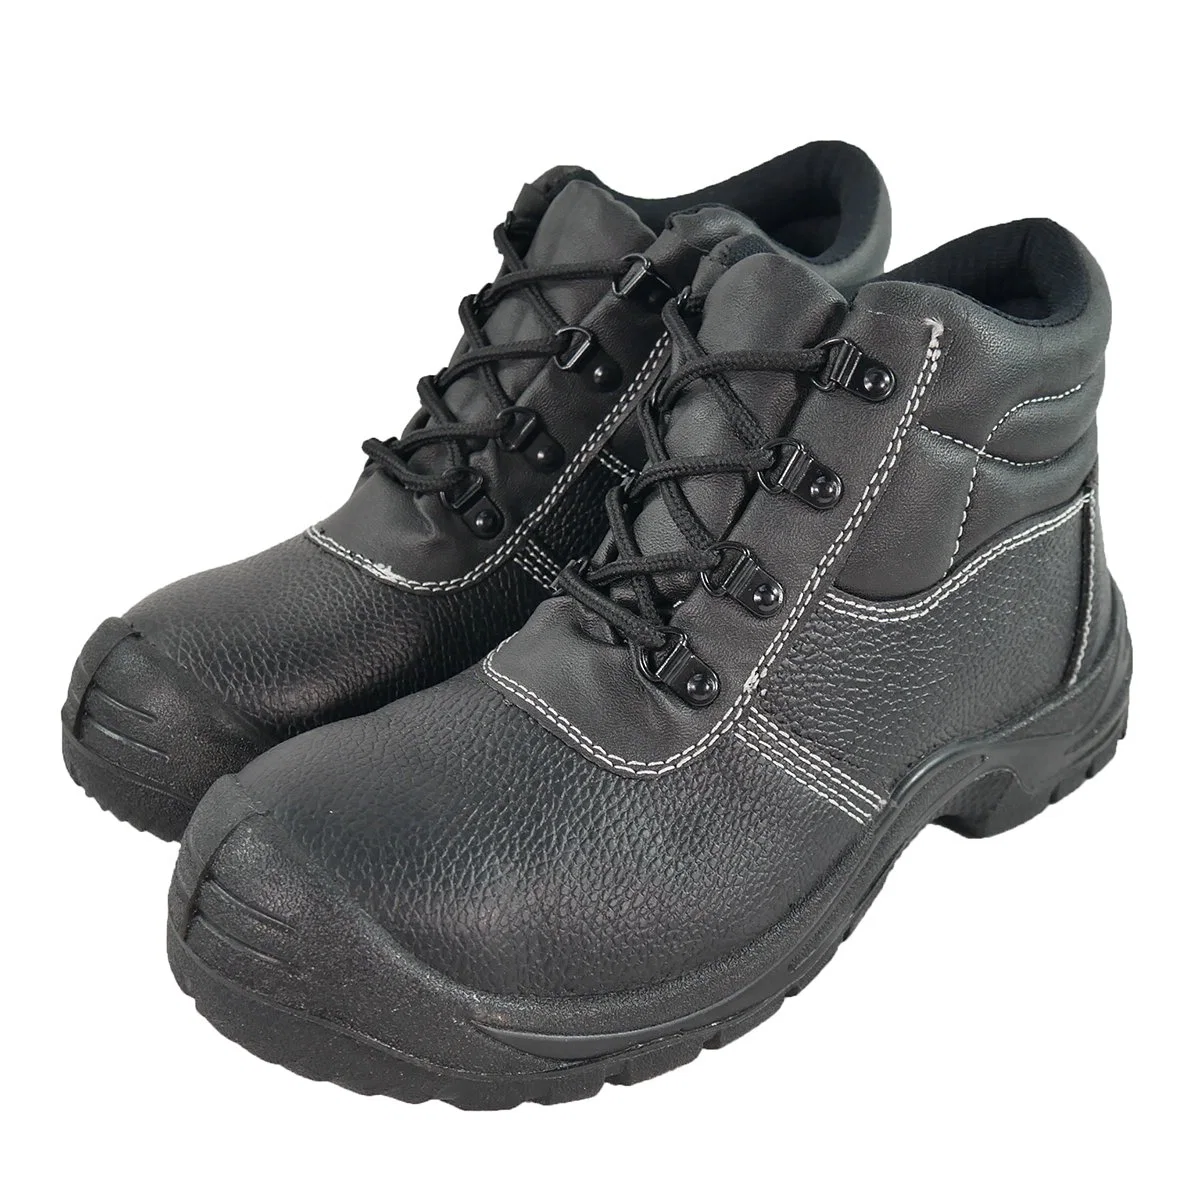 Новые продажи промышленных защитных повседневной работы кроссовки утюг с поддержкой TOE Обувь мужчин черный защитный обувь